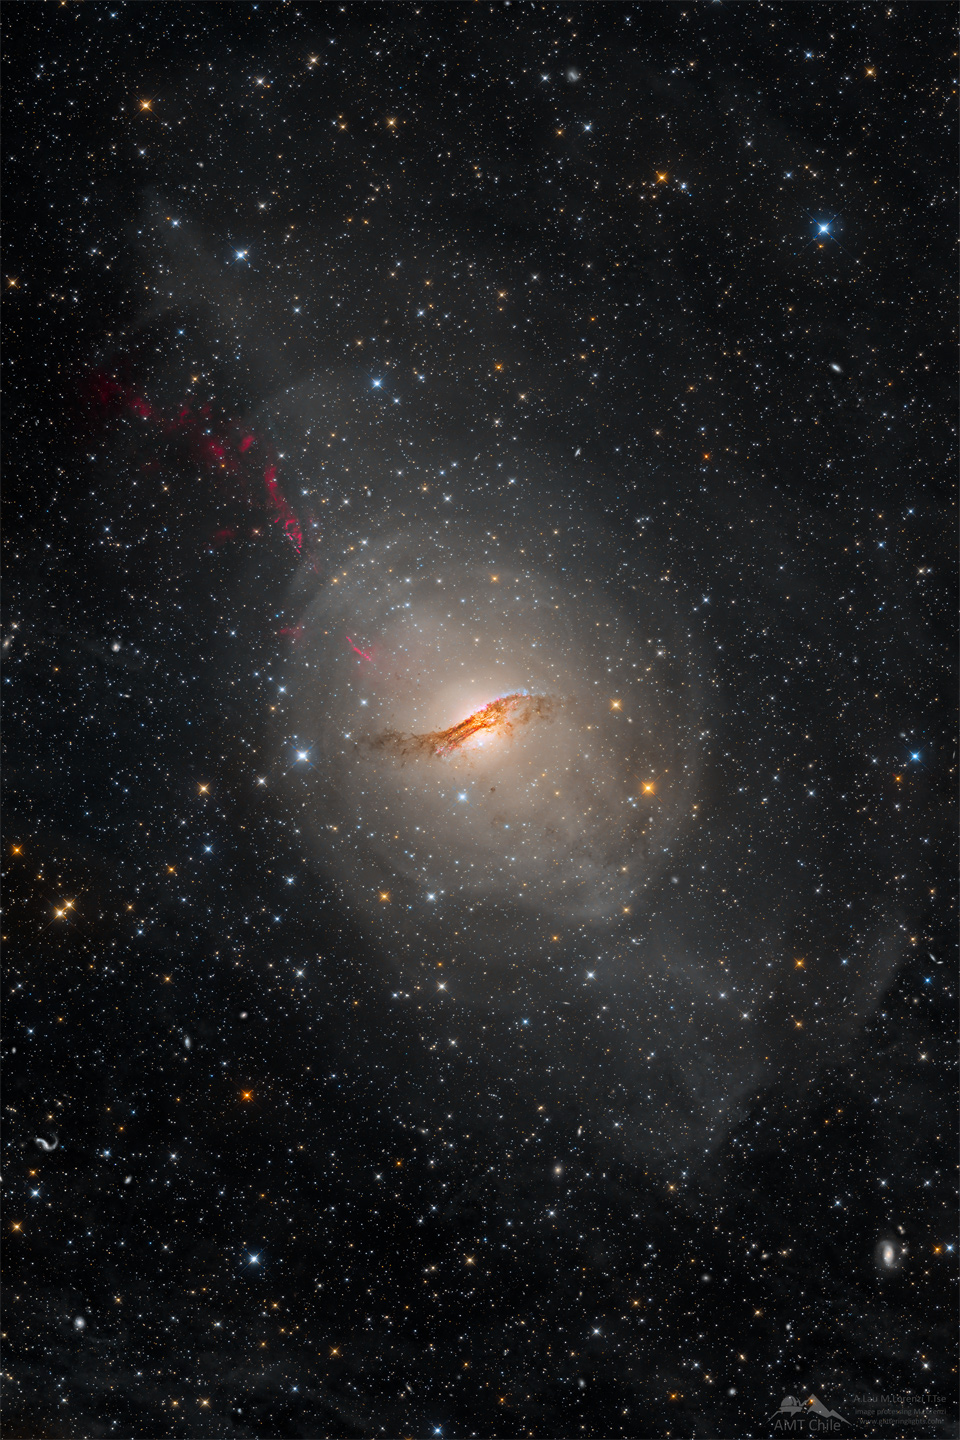 这是一张不寻常的半人马座A星系的长时间图像。该星系看起来是一个浅椭圆形，中心有一条复杂的暗尘埃带。星系周围是一片星场。有关更多详细信息，请参阅说明。